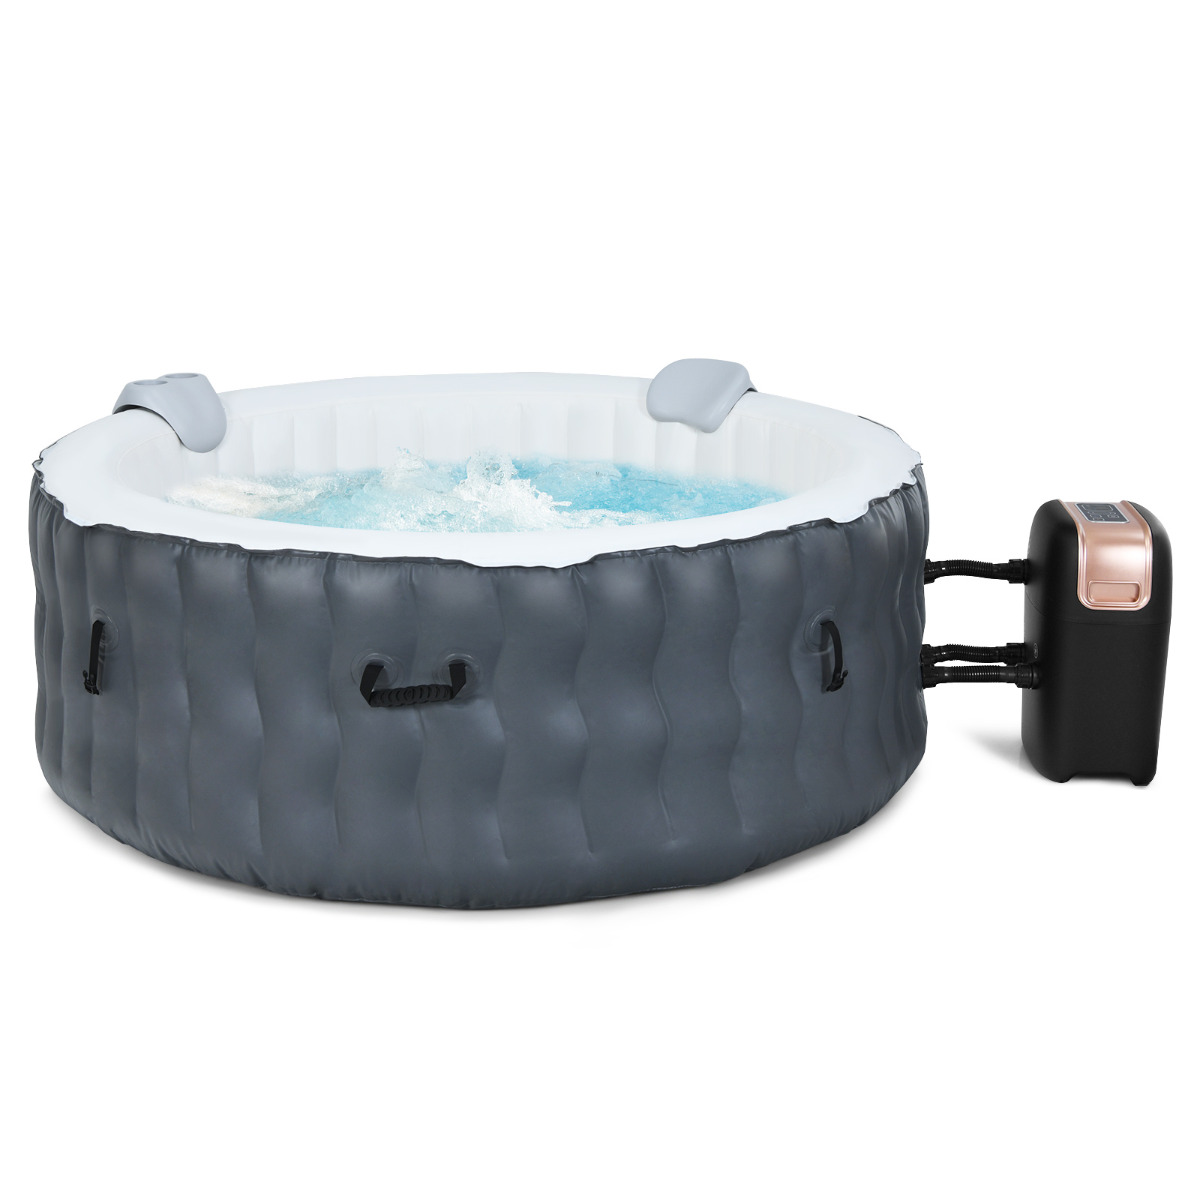 Arebos SPA Hinchable Whirlpool, Hinchable, para Interior y Exterior, ⌀  180 cm, 7 Personas, con calefacción, 1120 litros, Incluye Cubierta